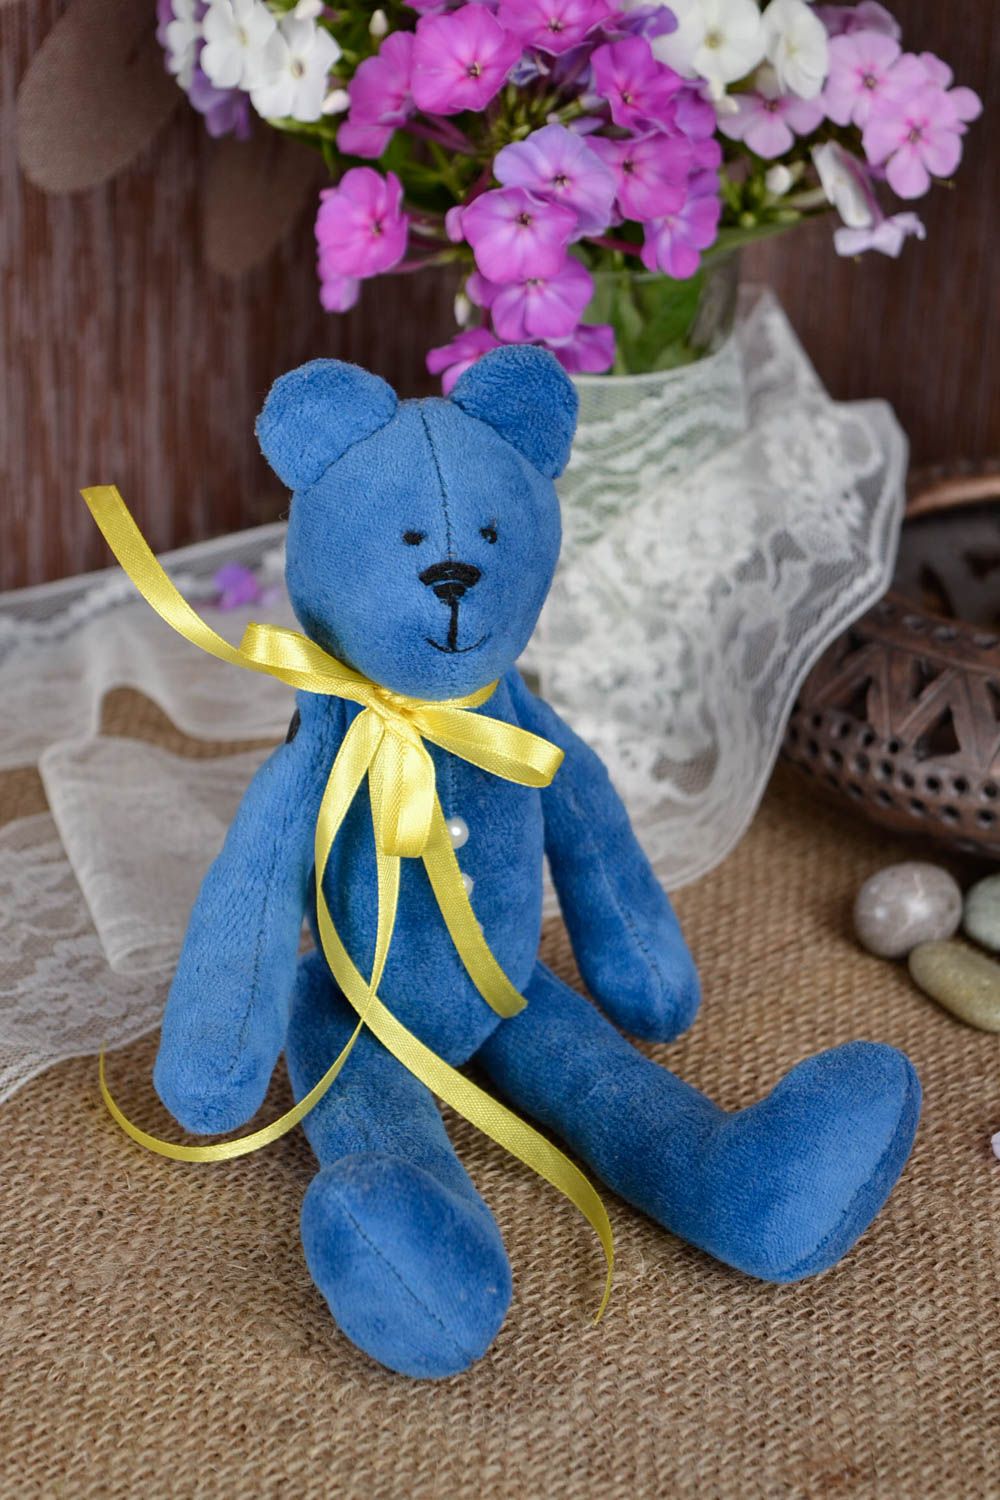 Игрушка мишка из ткани синий игрушка ручной работы интересный подарок для дома фото 1